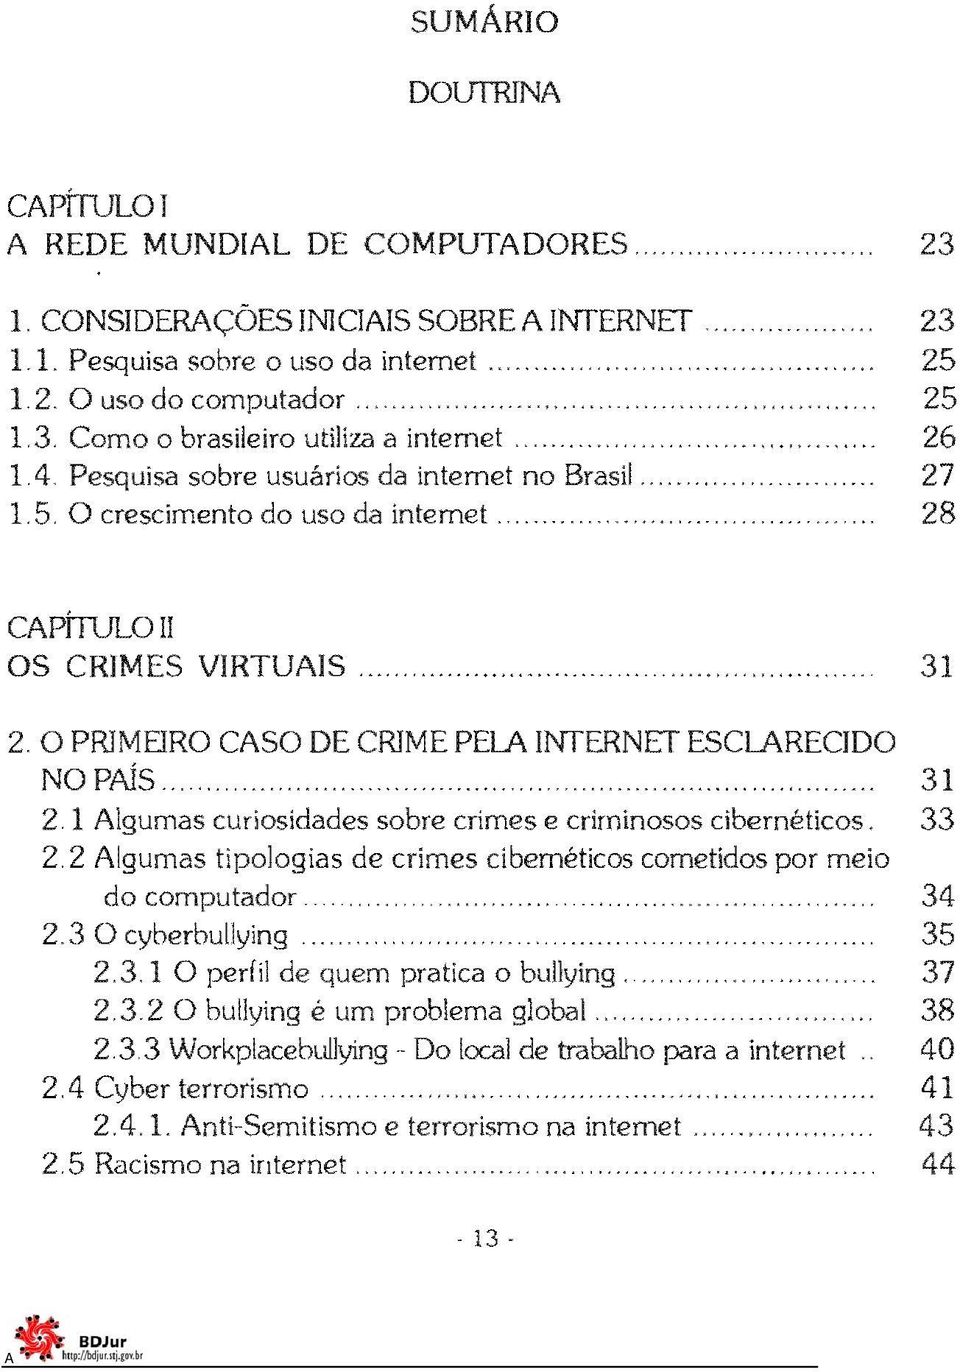 O PRIMEIRO CSO DE CRIME PEL INTERNET ESCLRECIDO NO PÍs, ",... ""',"" "".